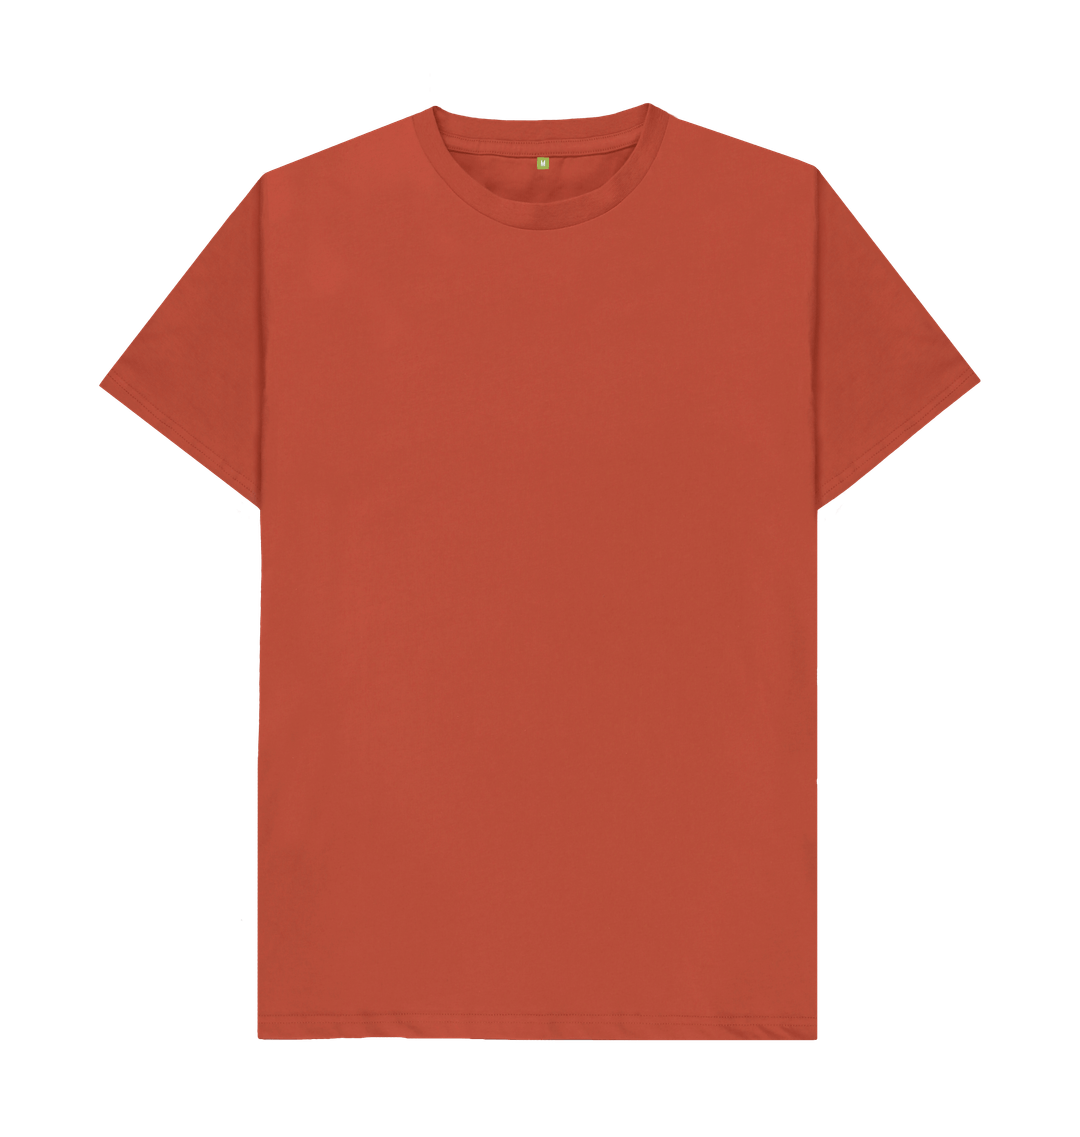 Men's Basic T - Shirt - Plain T - Shirt